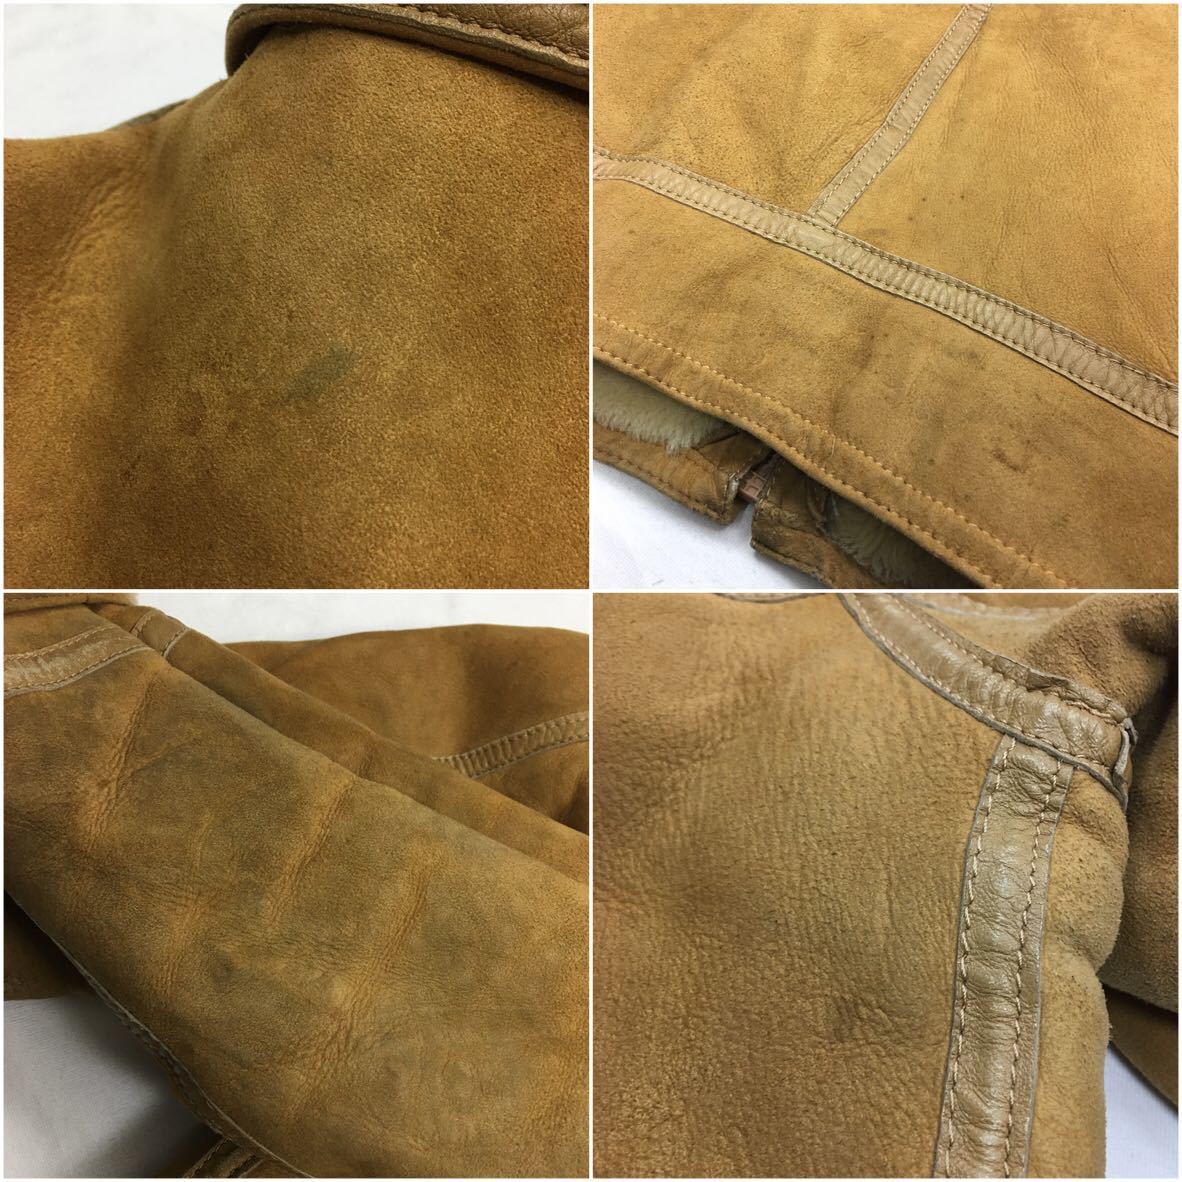  Vintage 80s[ мутон кожа ягненка ] настоящий кожаный жакет 48 M обратная сторона боа джемпер б/у одежда защищающий от холода натуральная кожа 70s унисекс кожаная куртка Rider's 